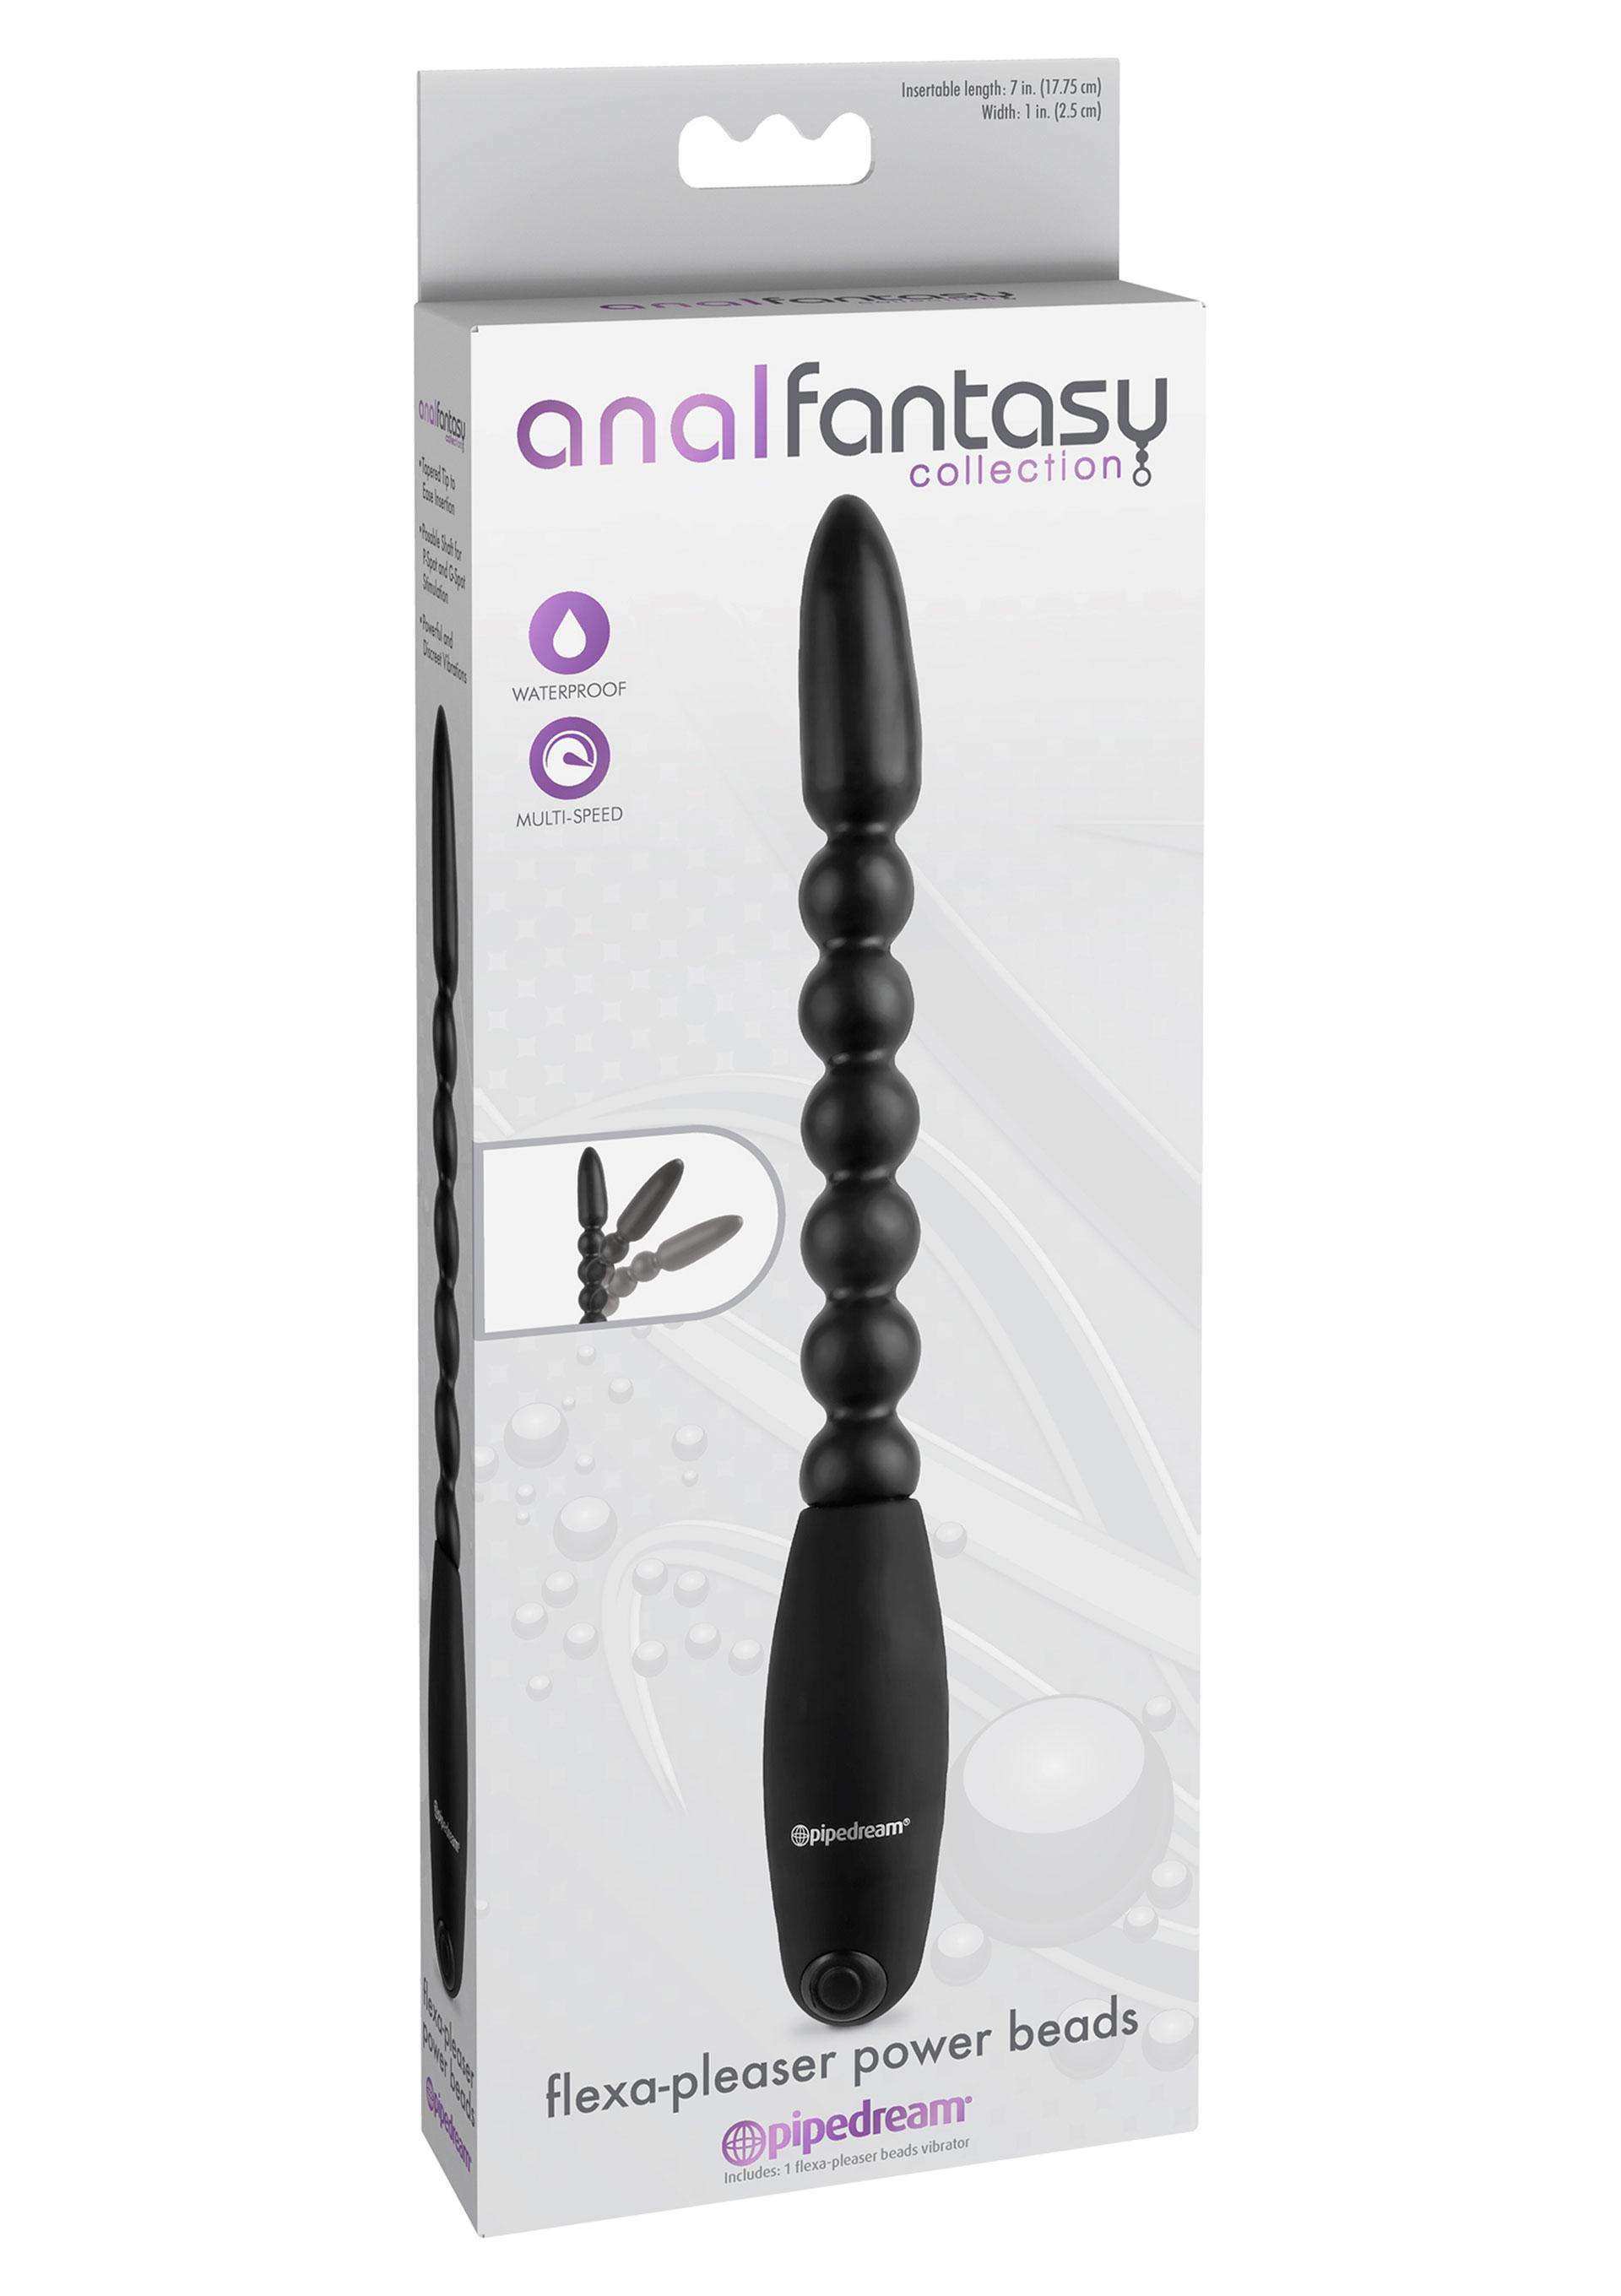 AnalFantasy Flexa-Pleaser Power Beads, Vibrator, 26,5 cm, Black